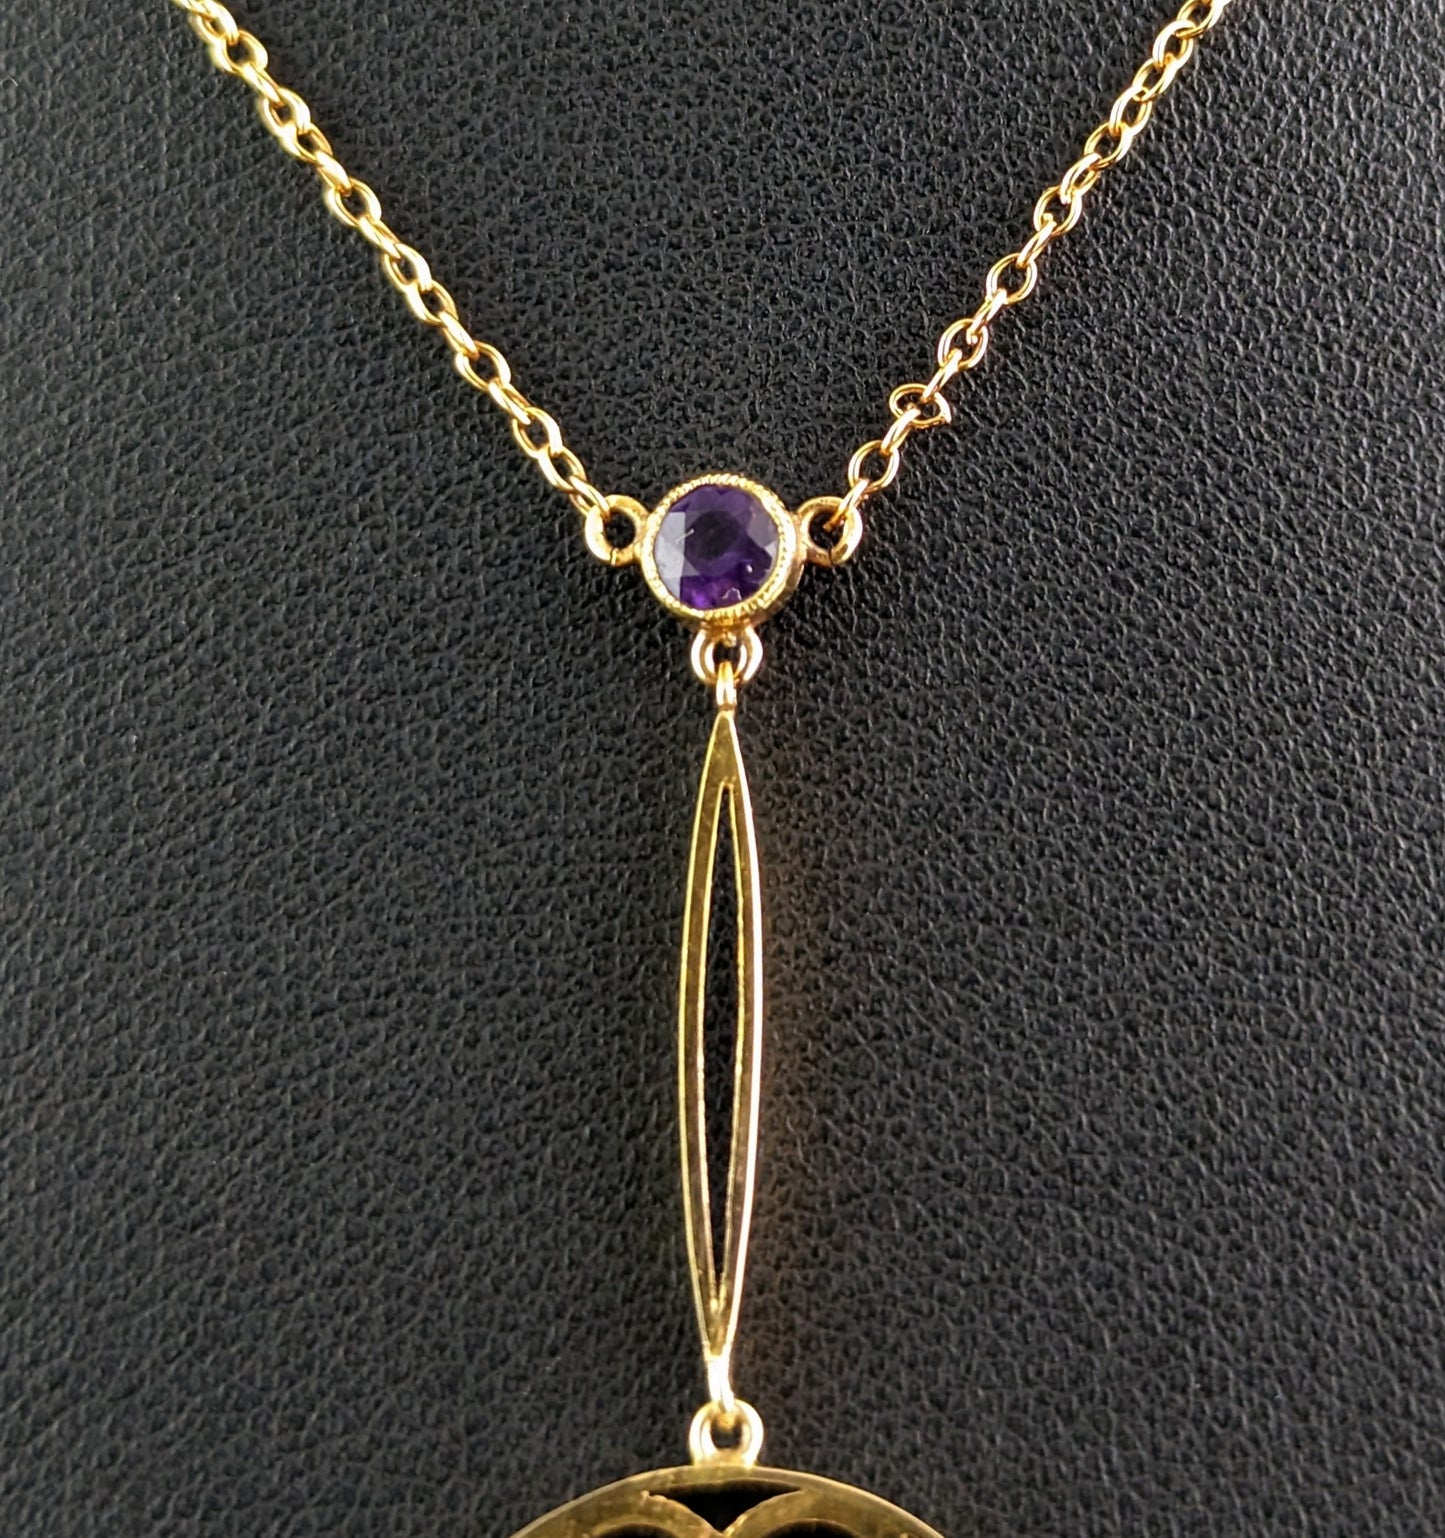 Antique Art Nouveau pendant necklace, Amethyst and Pearl, 9ct gold